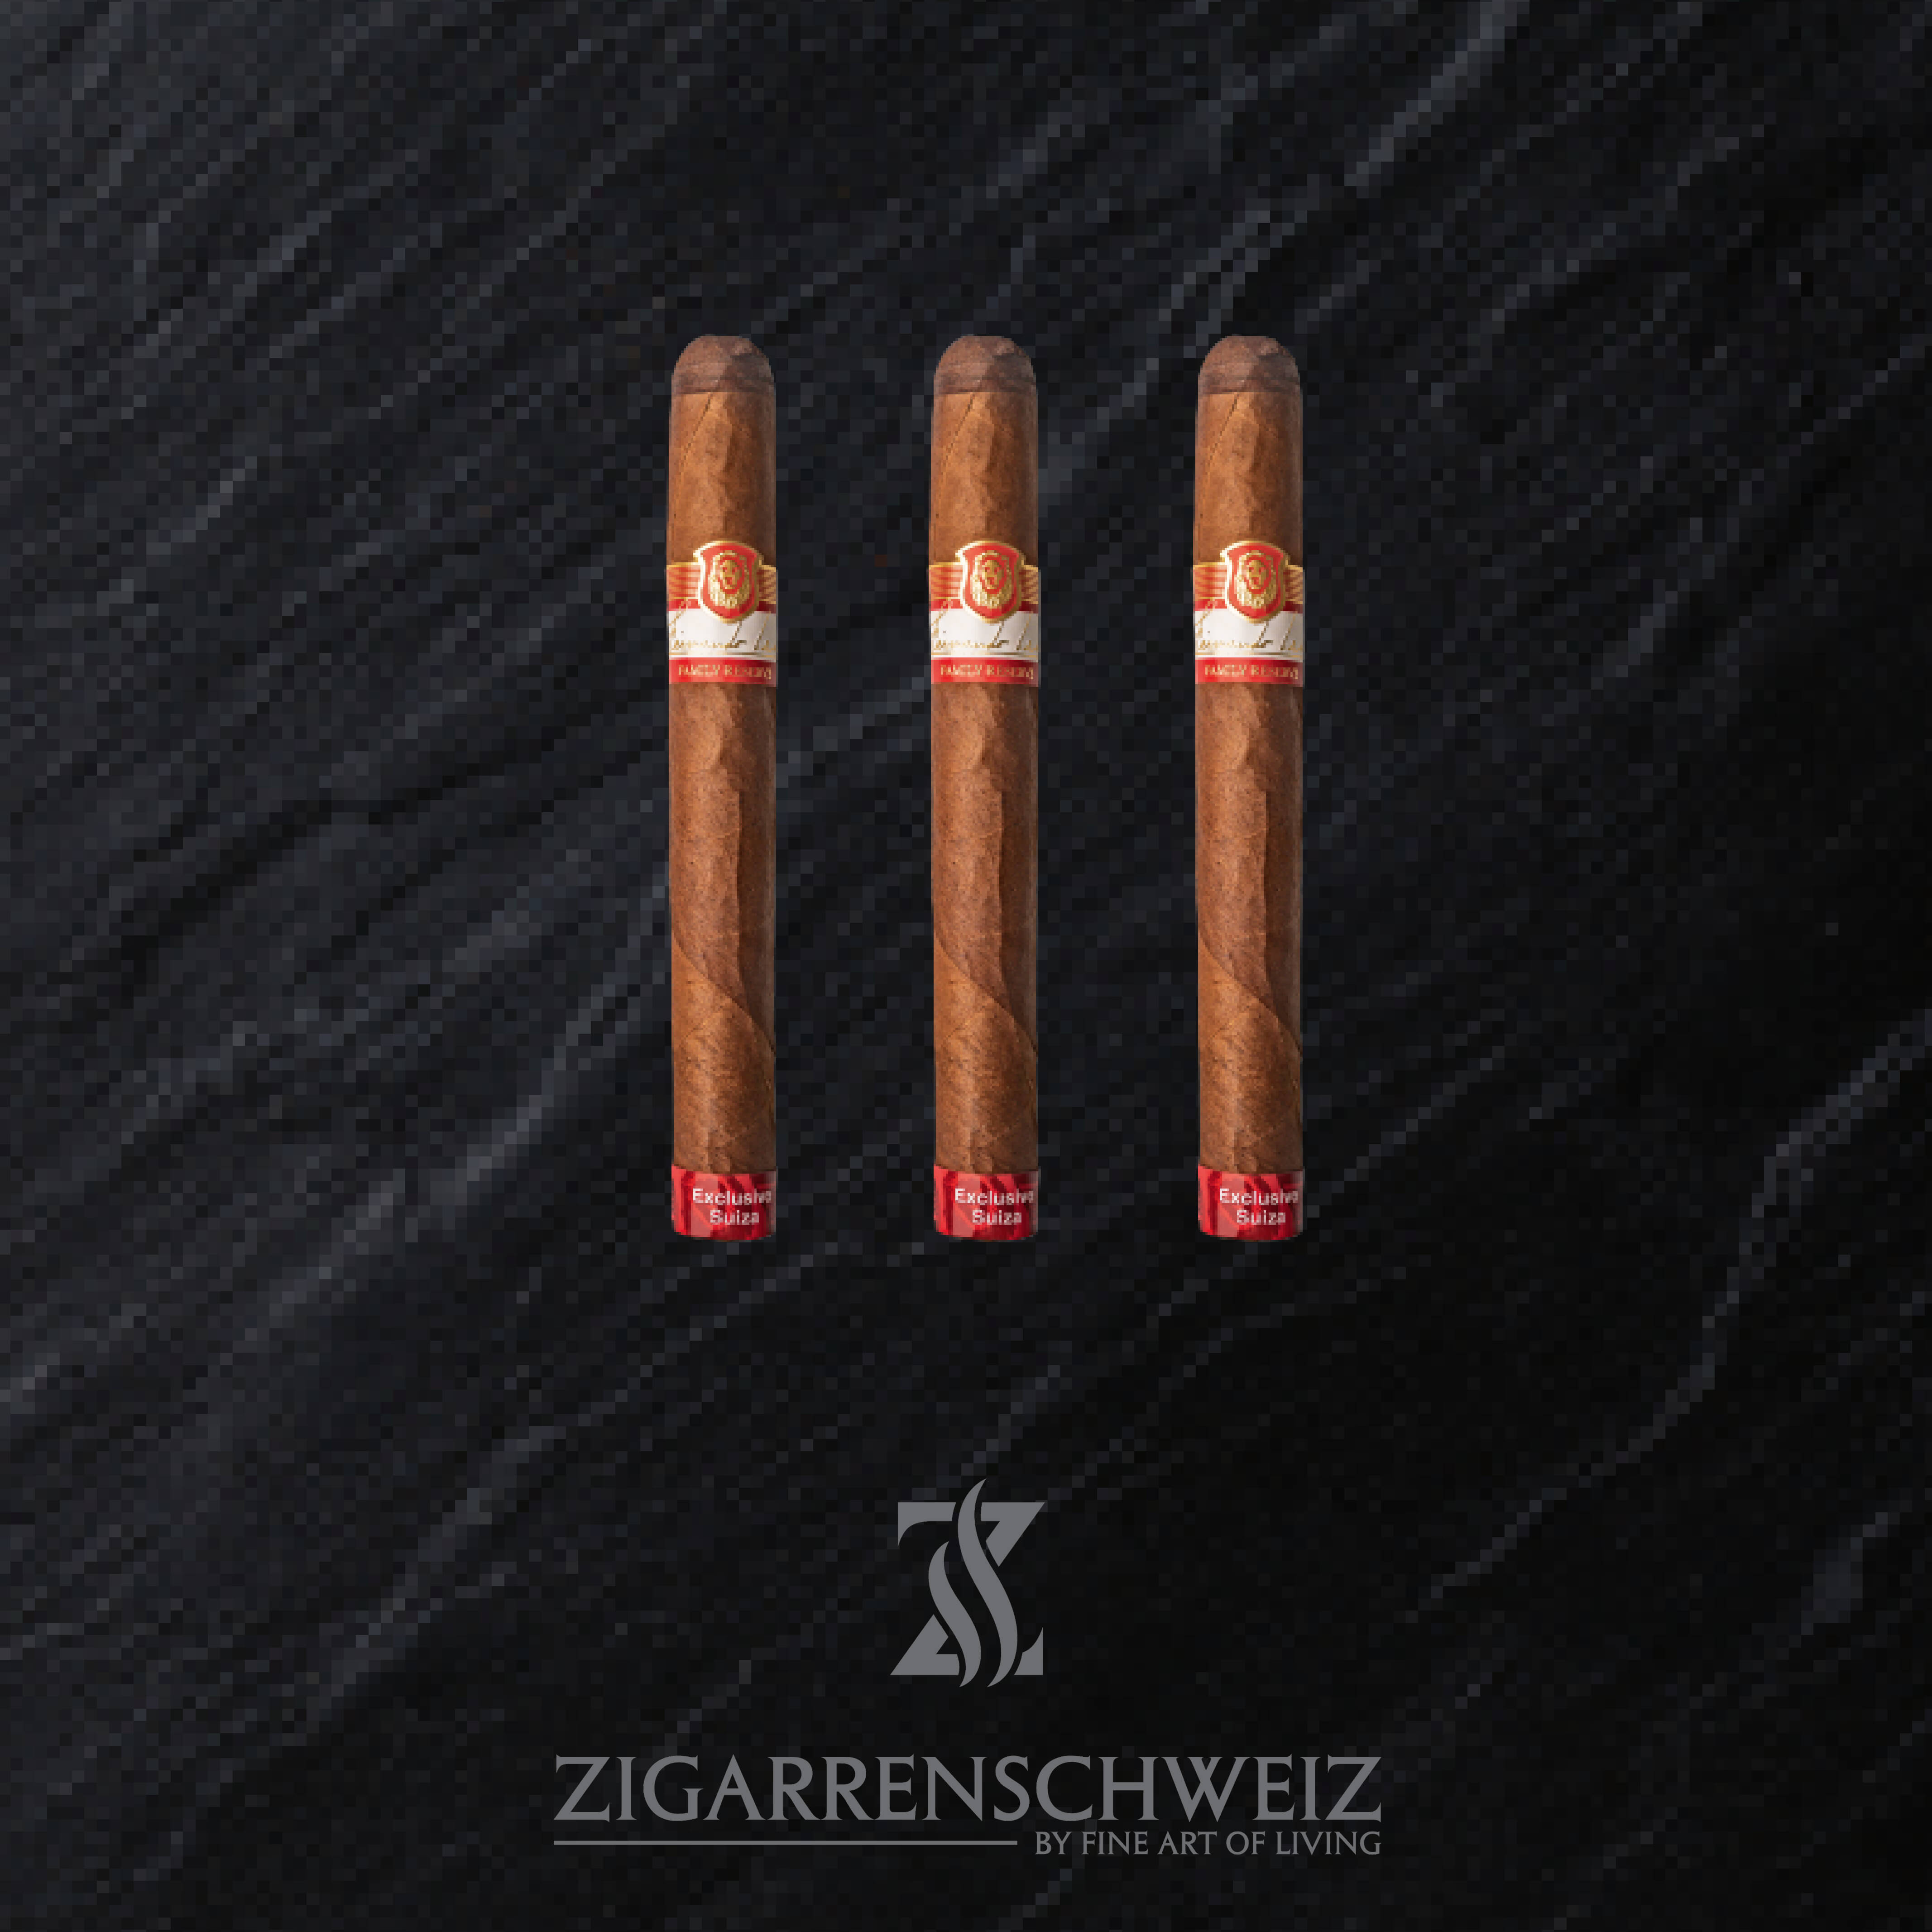 La Aurora Fernando Leon Suiza Corona Gordo Limited Edition Zigarren 3er Etui von Zigarren Schweiz